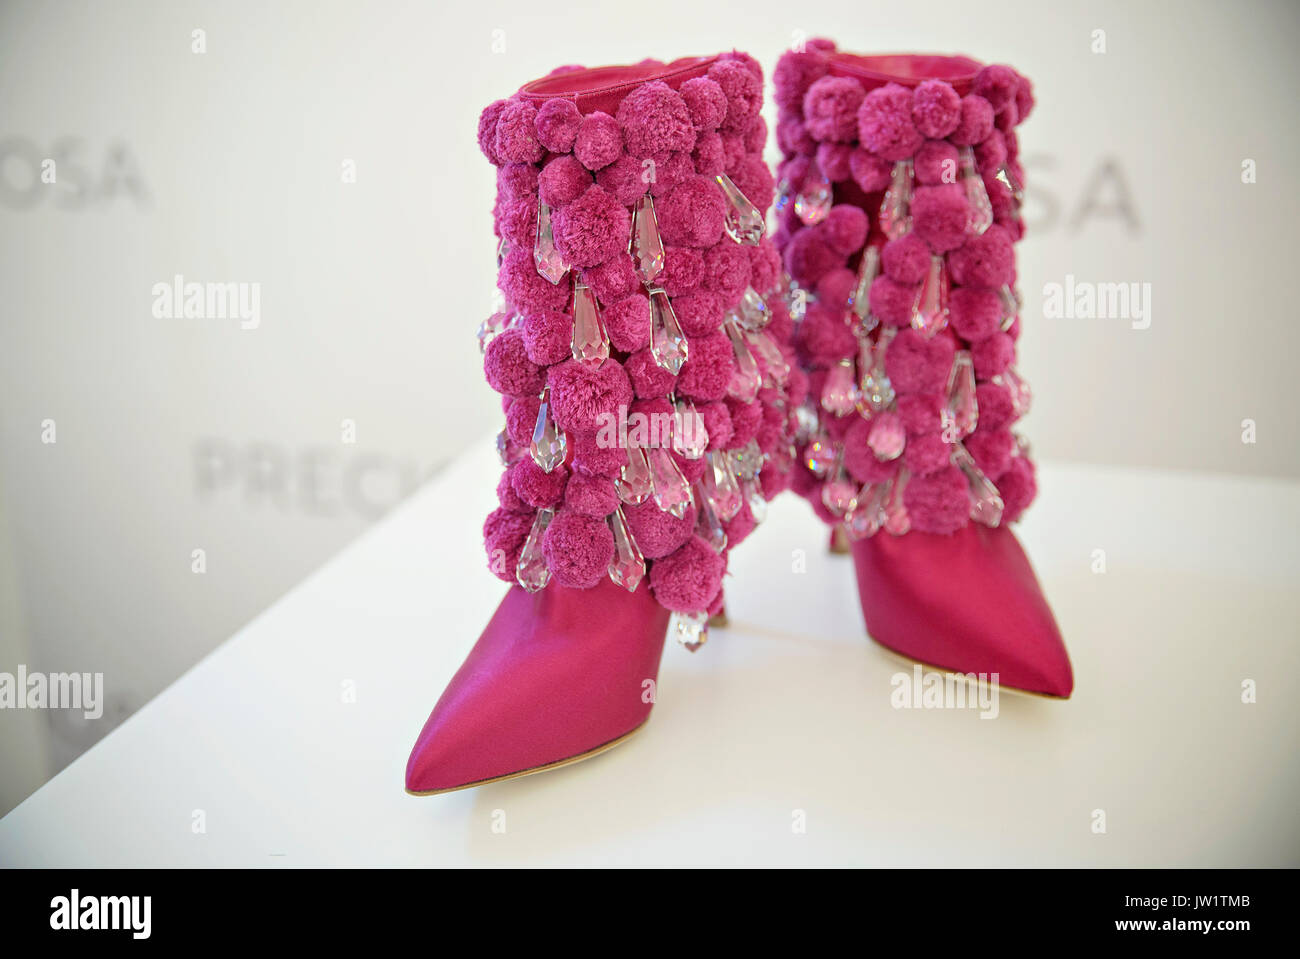 manolo blahnik flower shoes